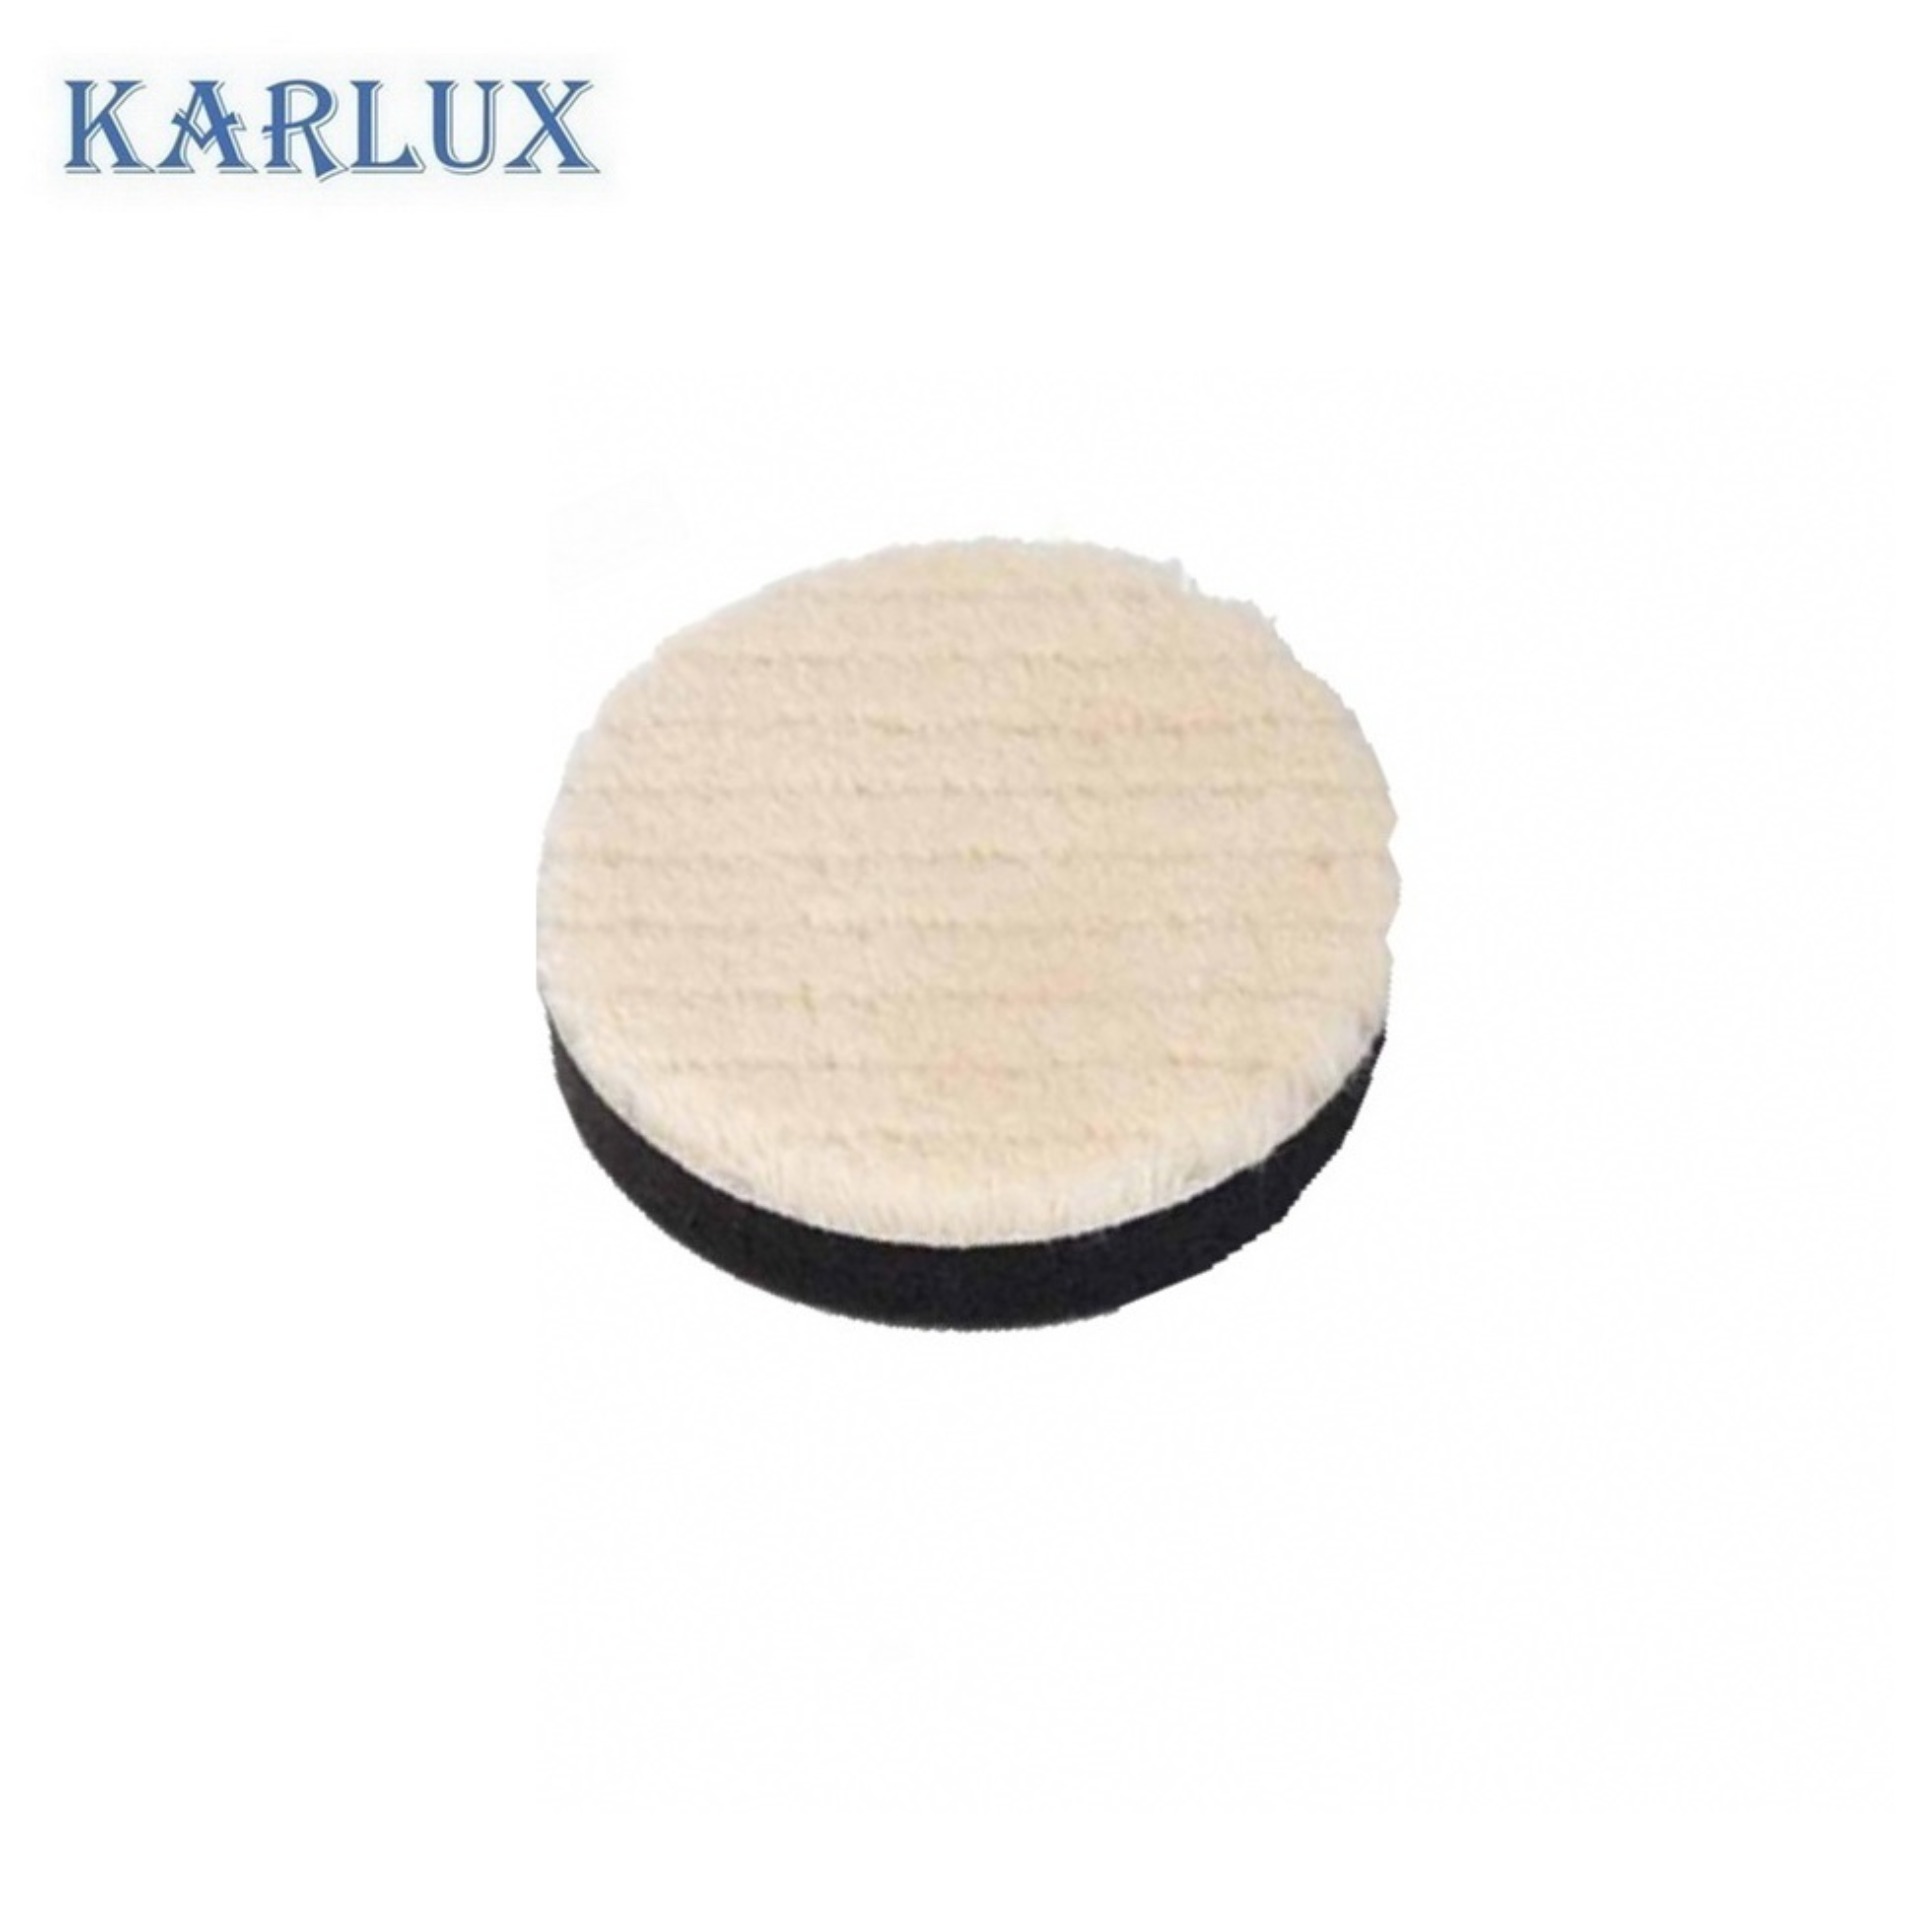 Karlux แผ่นขัดขนแกะ 3 นิ้ว ขนสั้น มีเสริมฟองน้ำ หลังผ้าสักหลาด Wool Pad w/velcro 3 inch